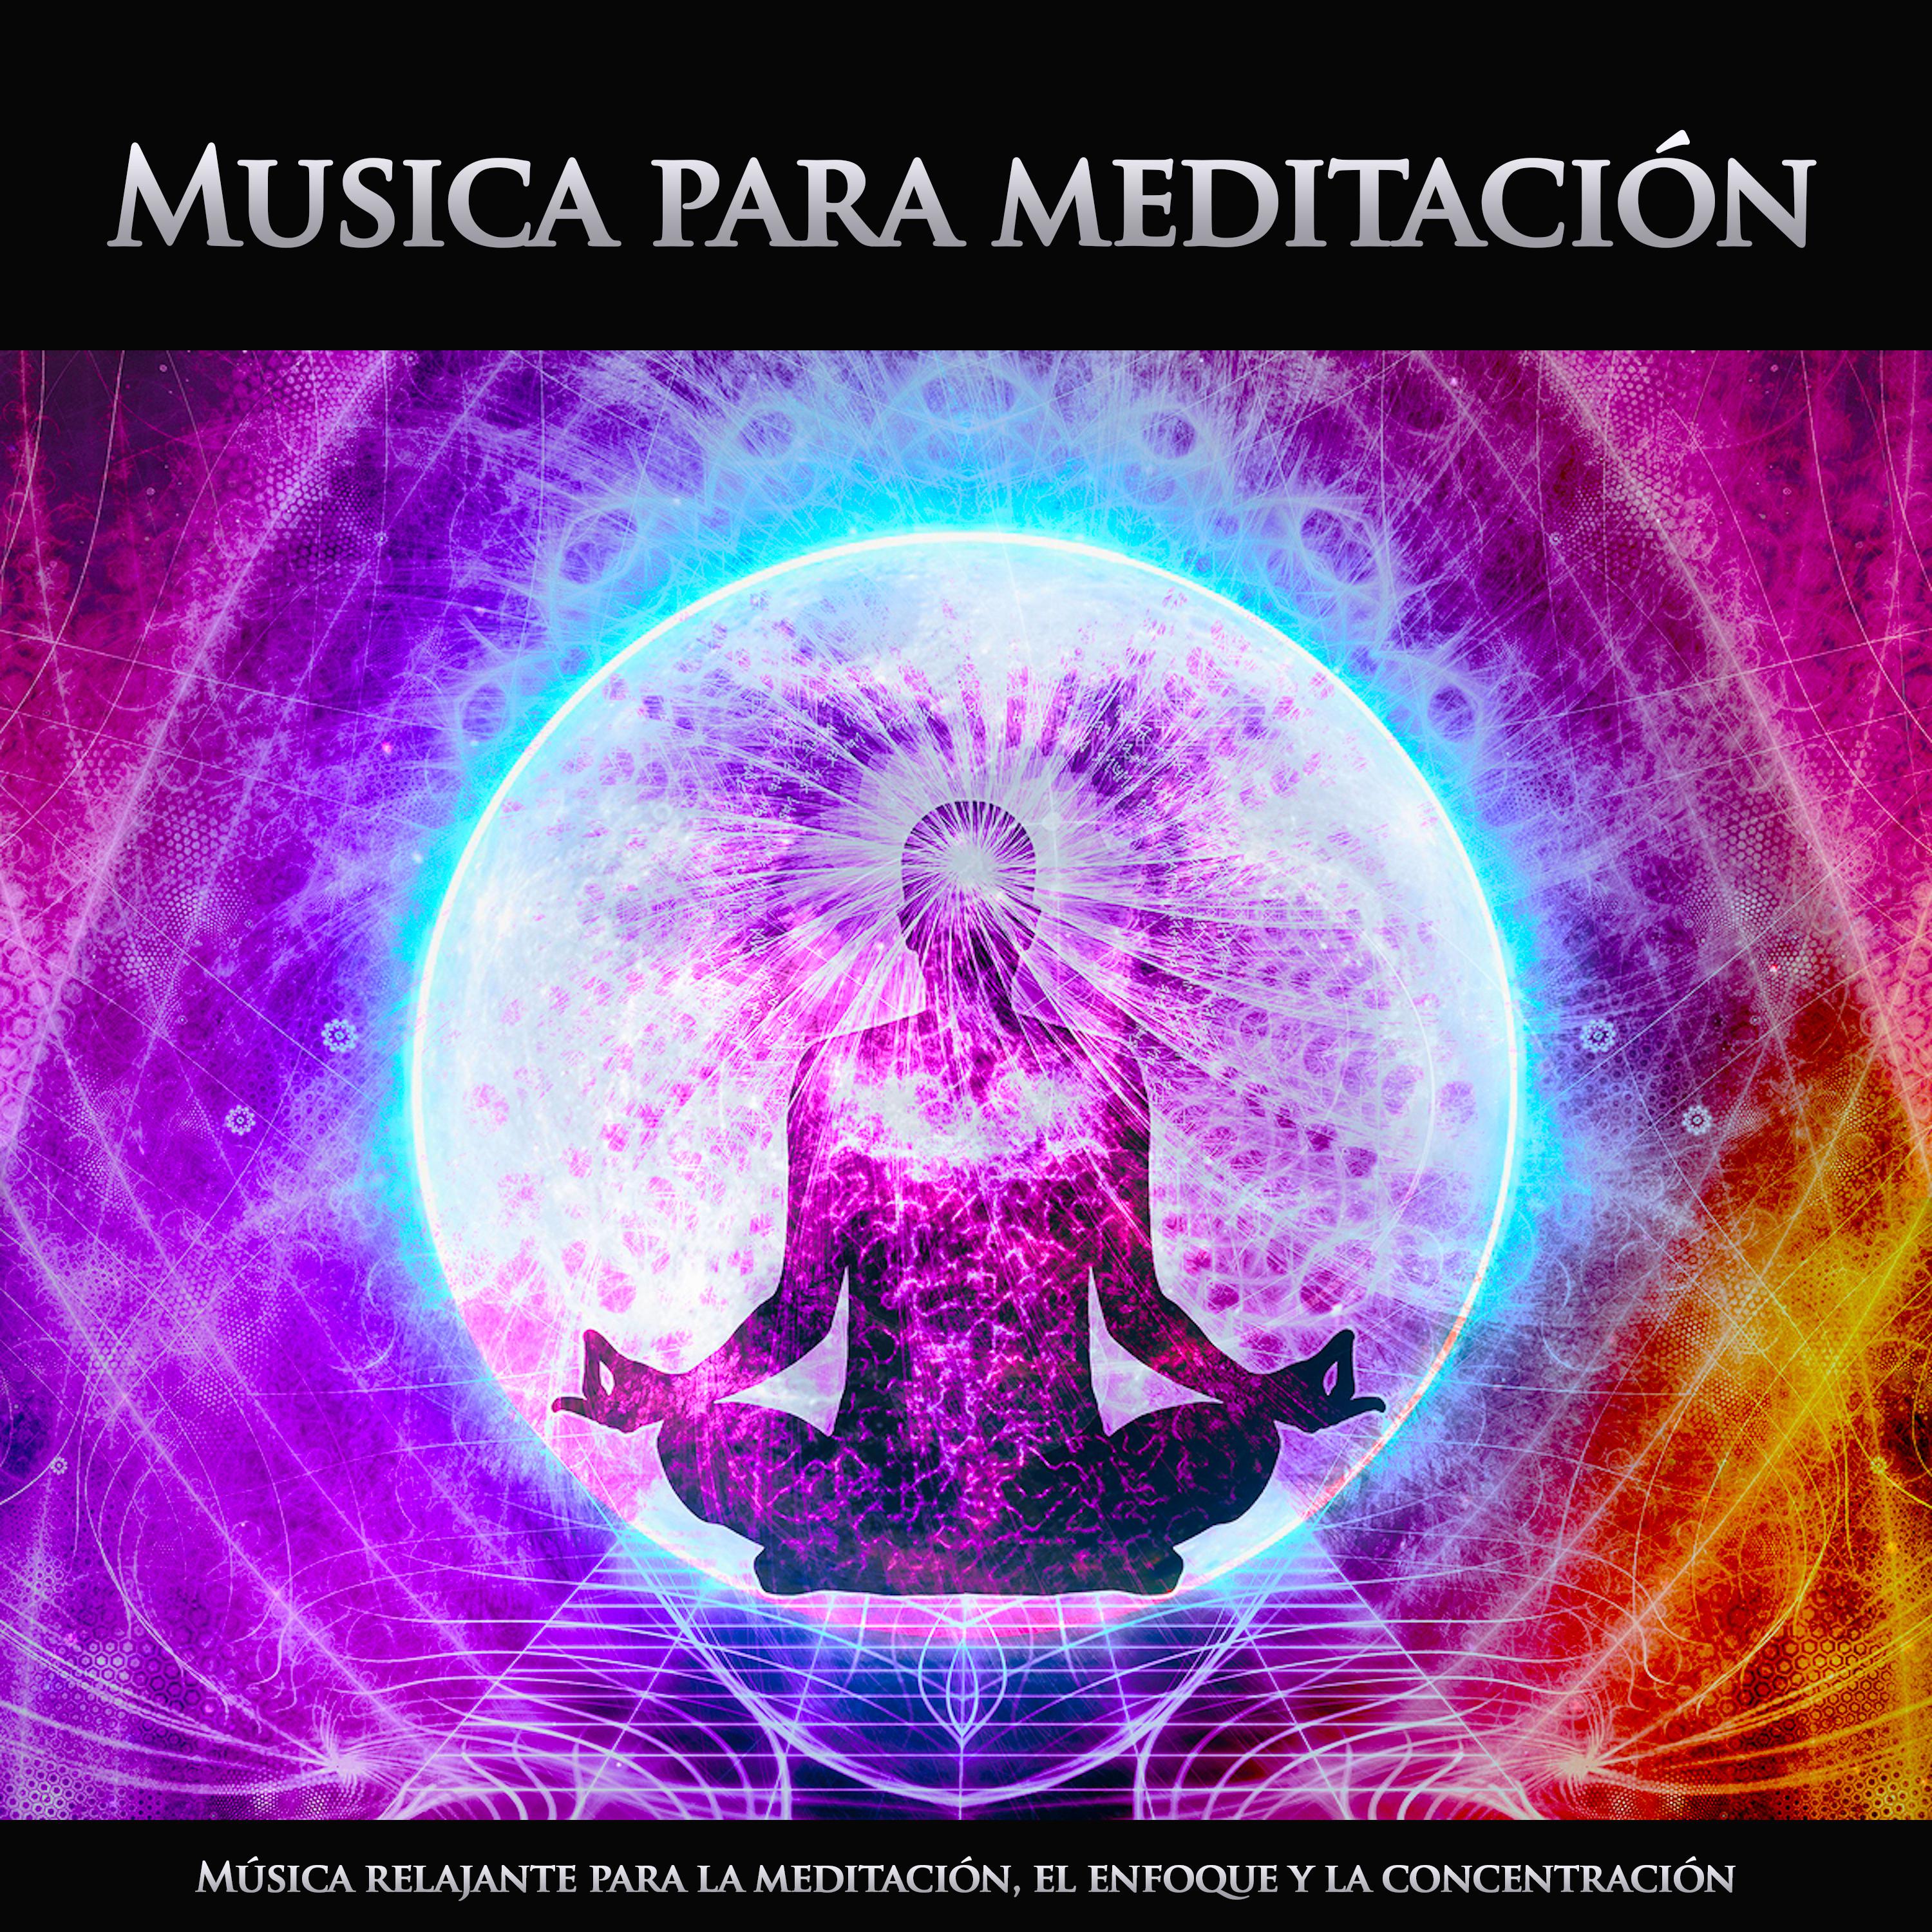 Musica para meditación - Música instrumental